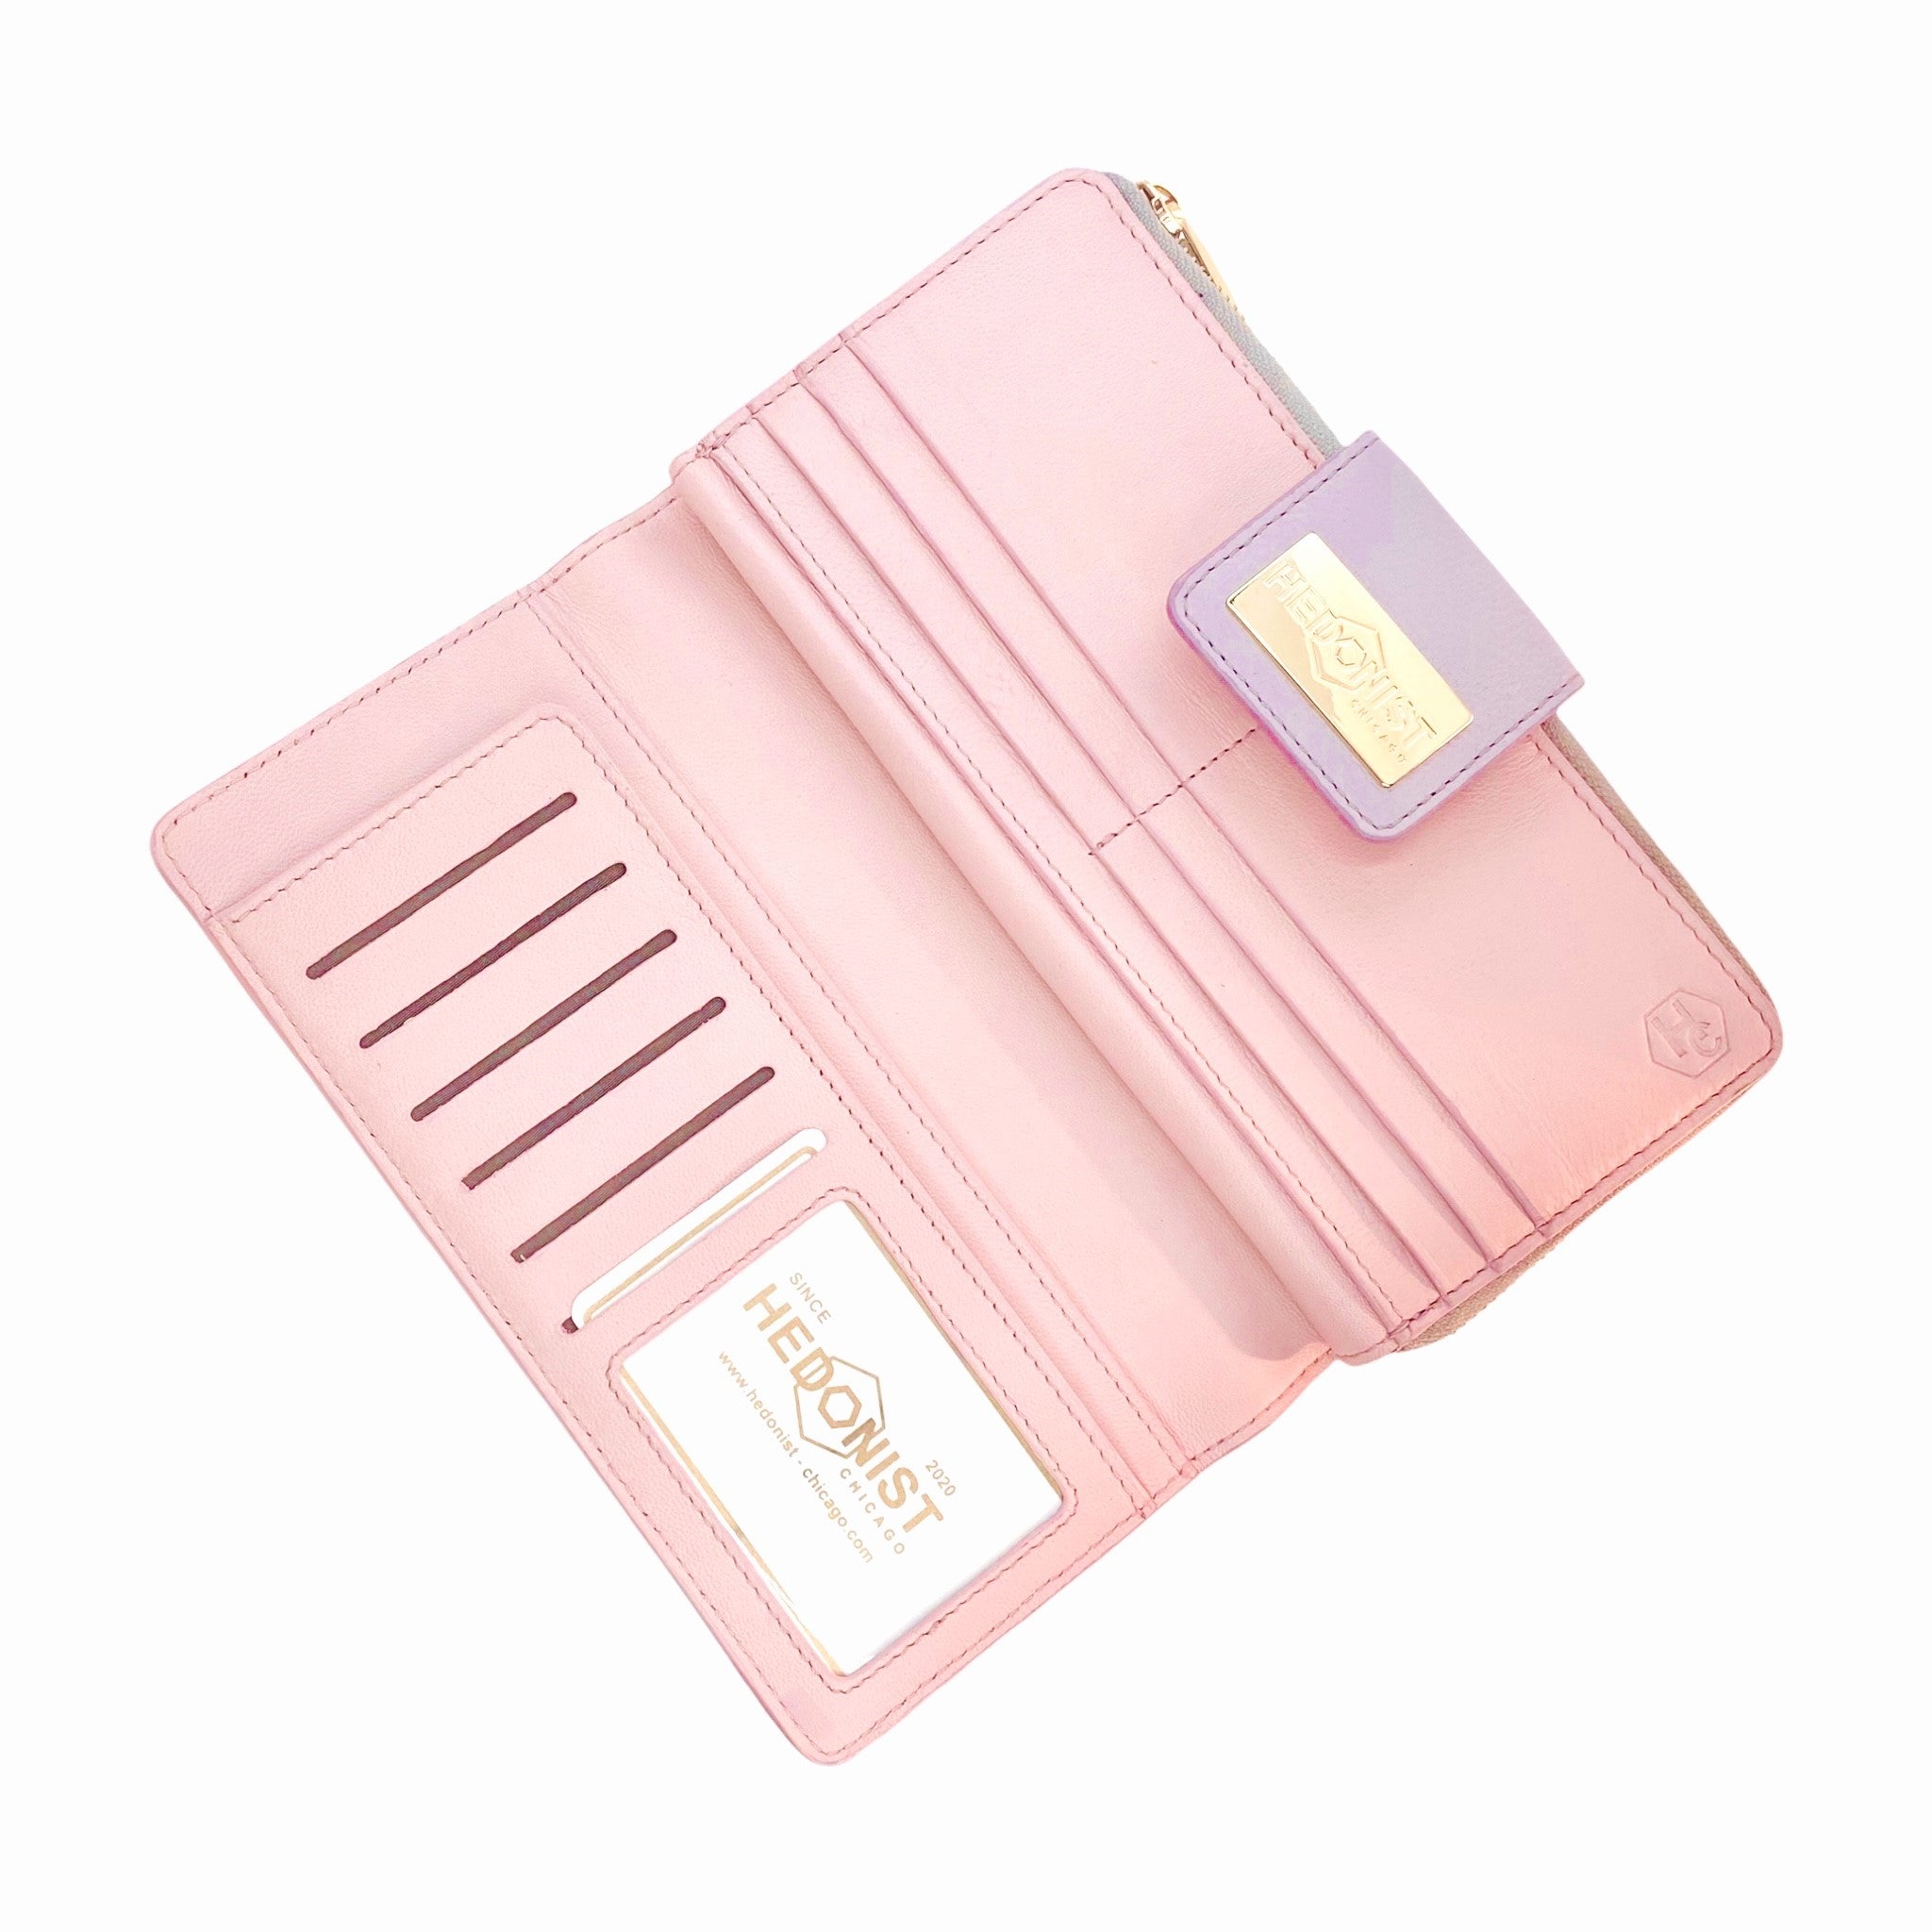 Traveler Wallet Lilac - Pink*